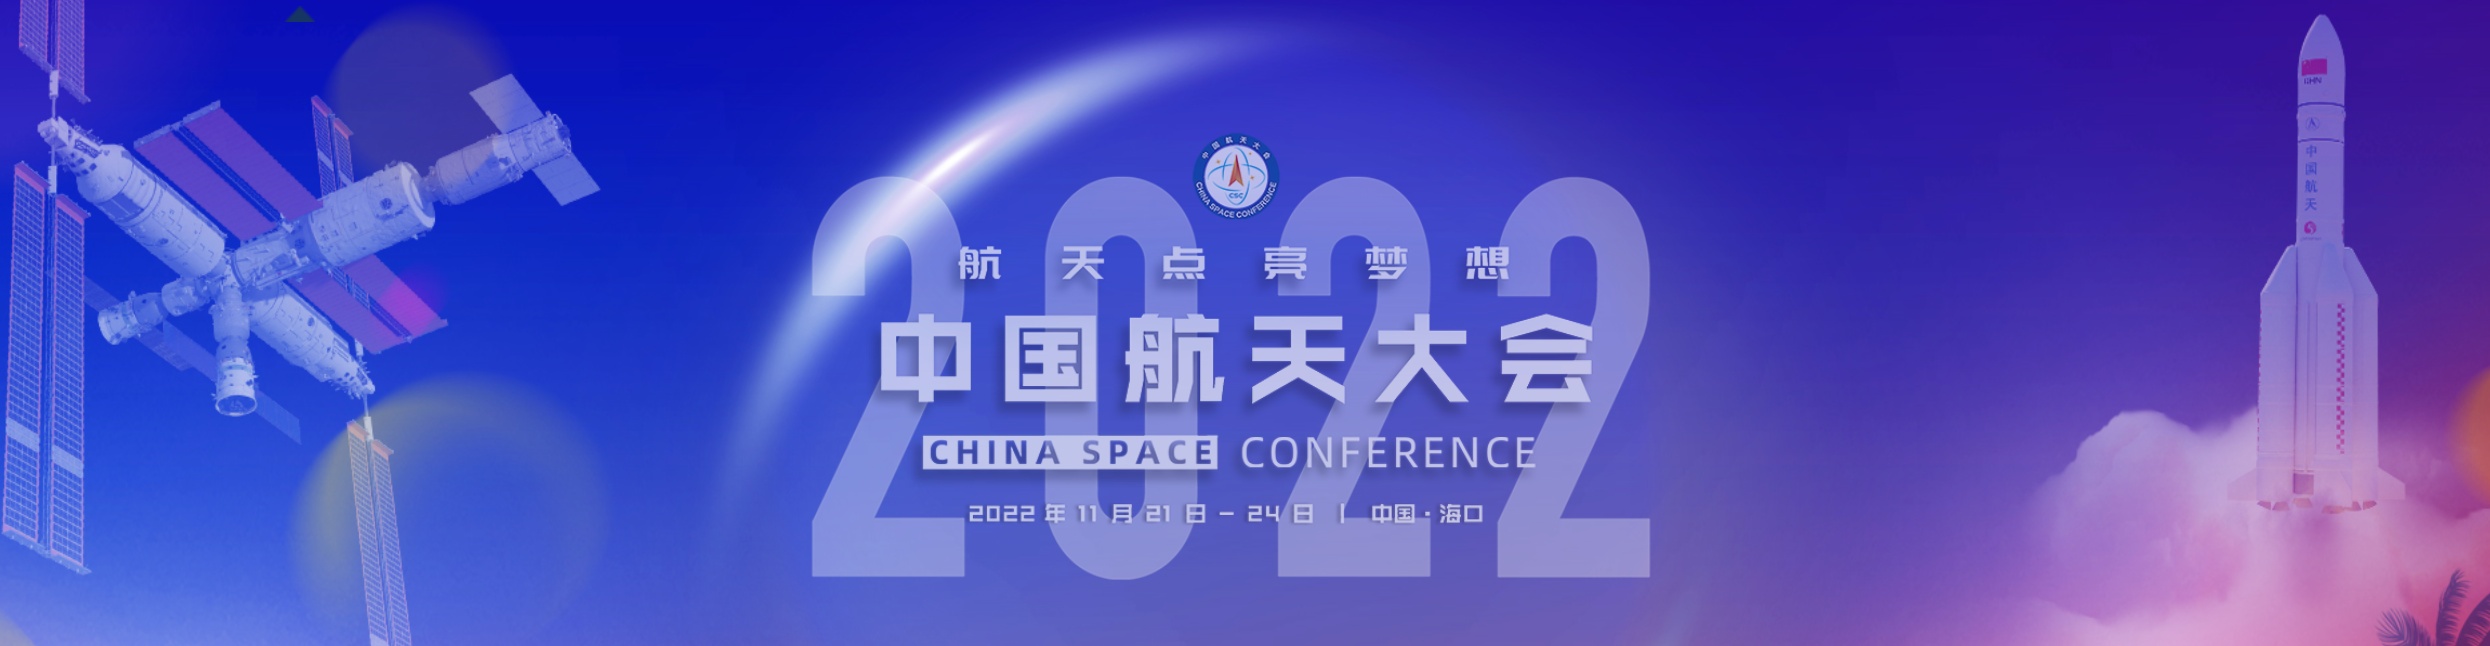 2022年中国航天大会将在海南开幕